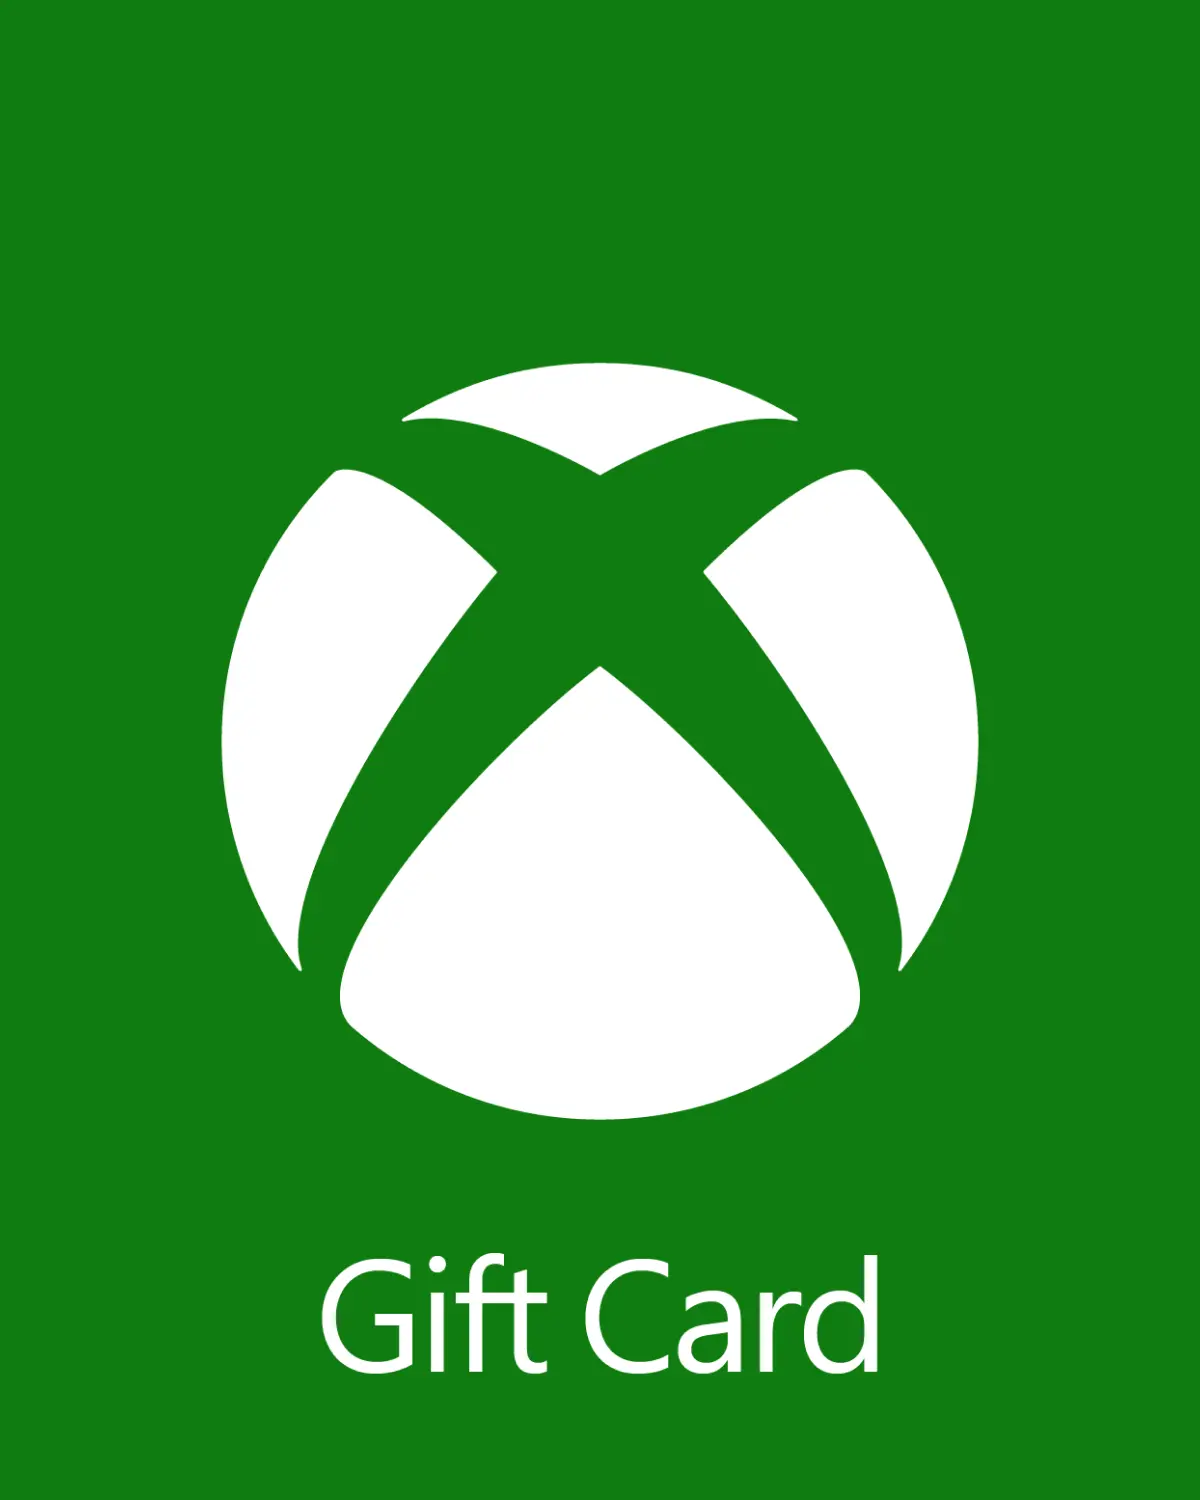 Xbox £10 GBP Gift Card (UK) - Digital Code